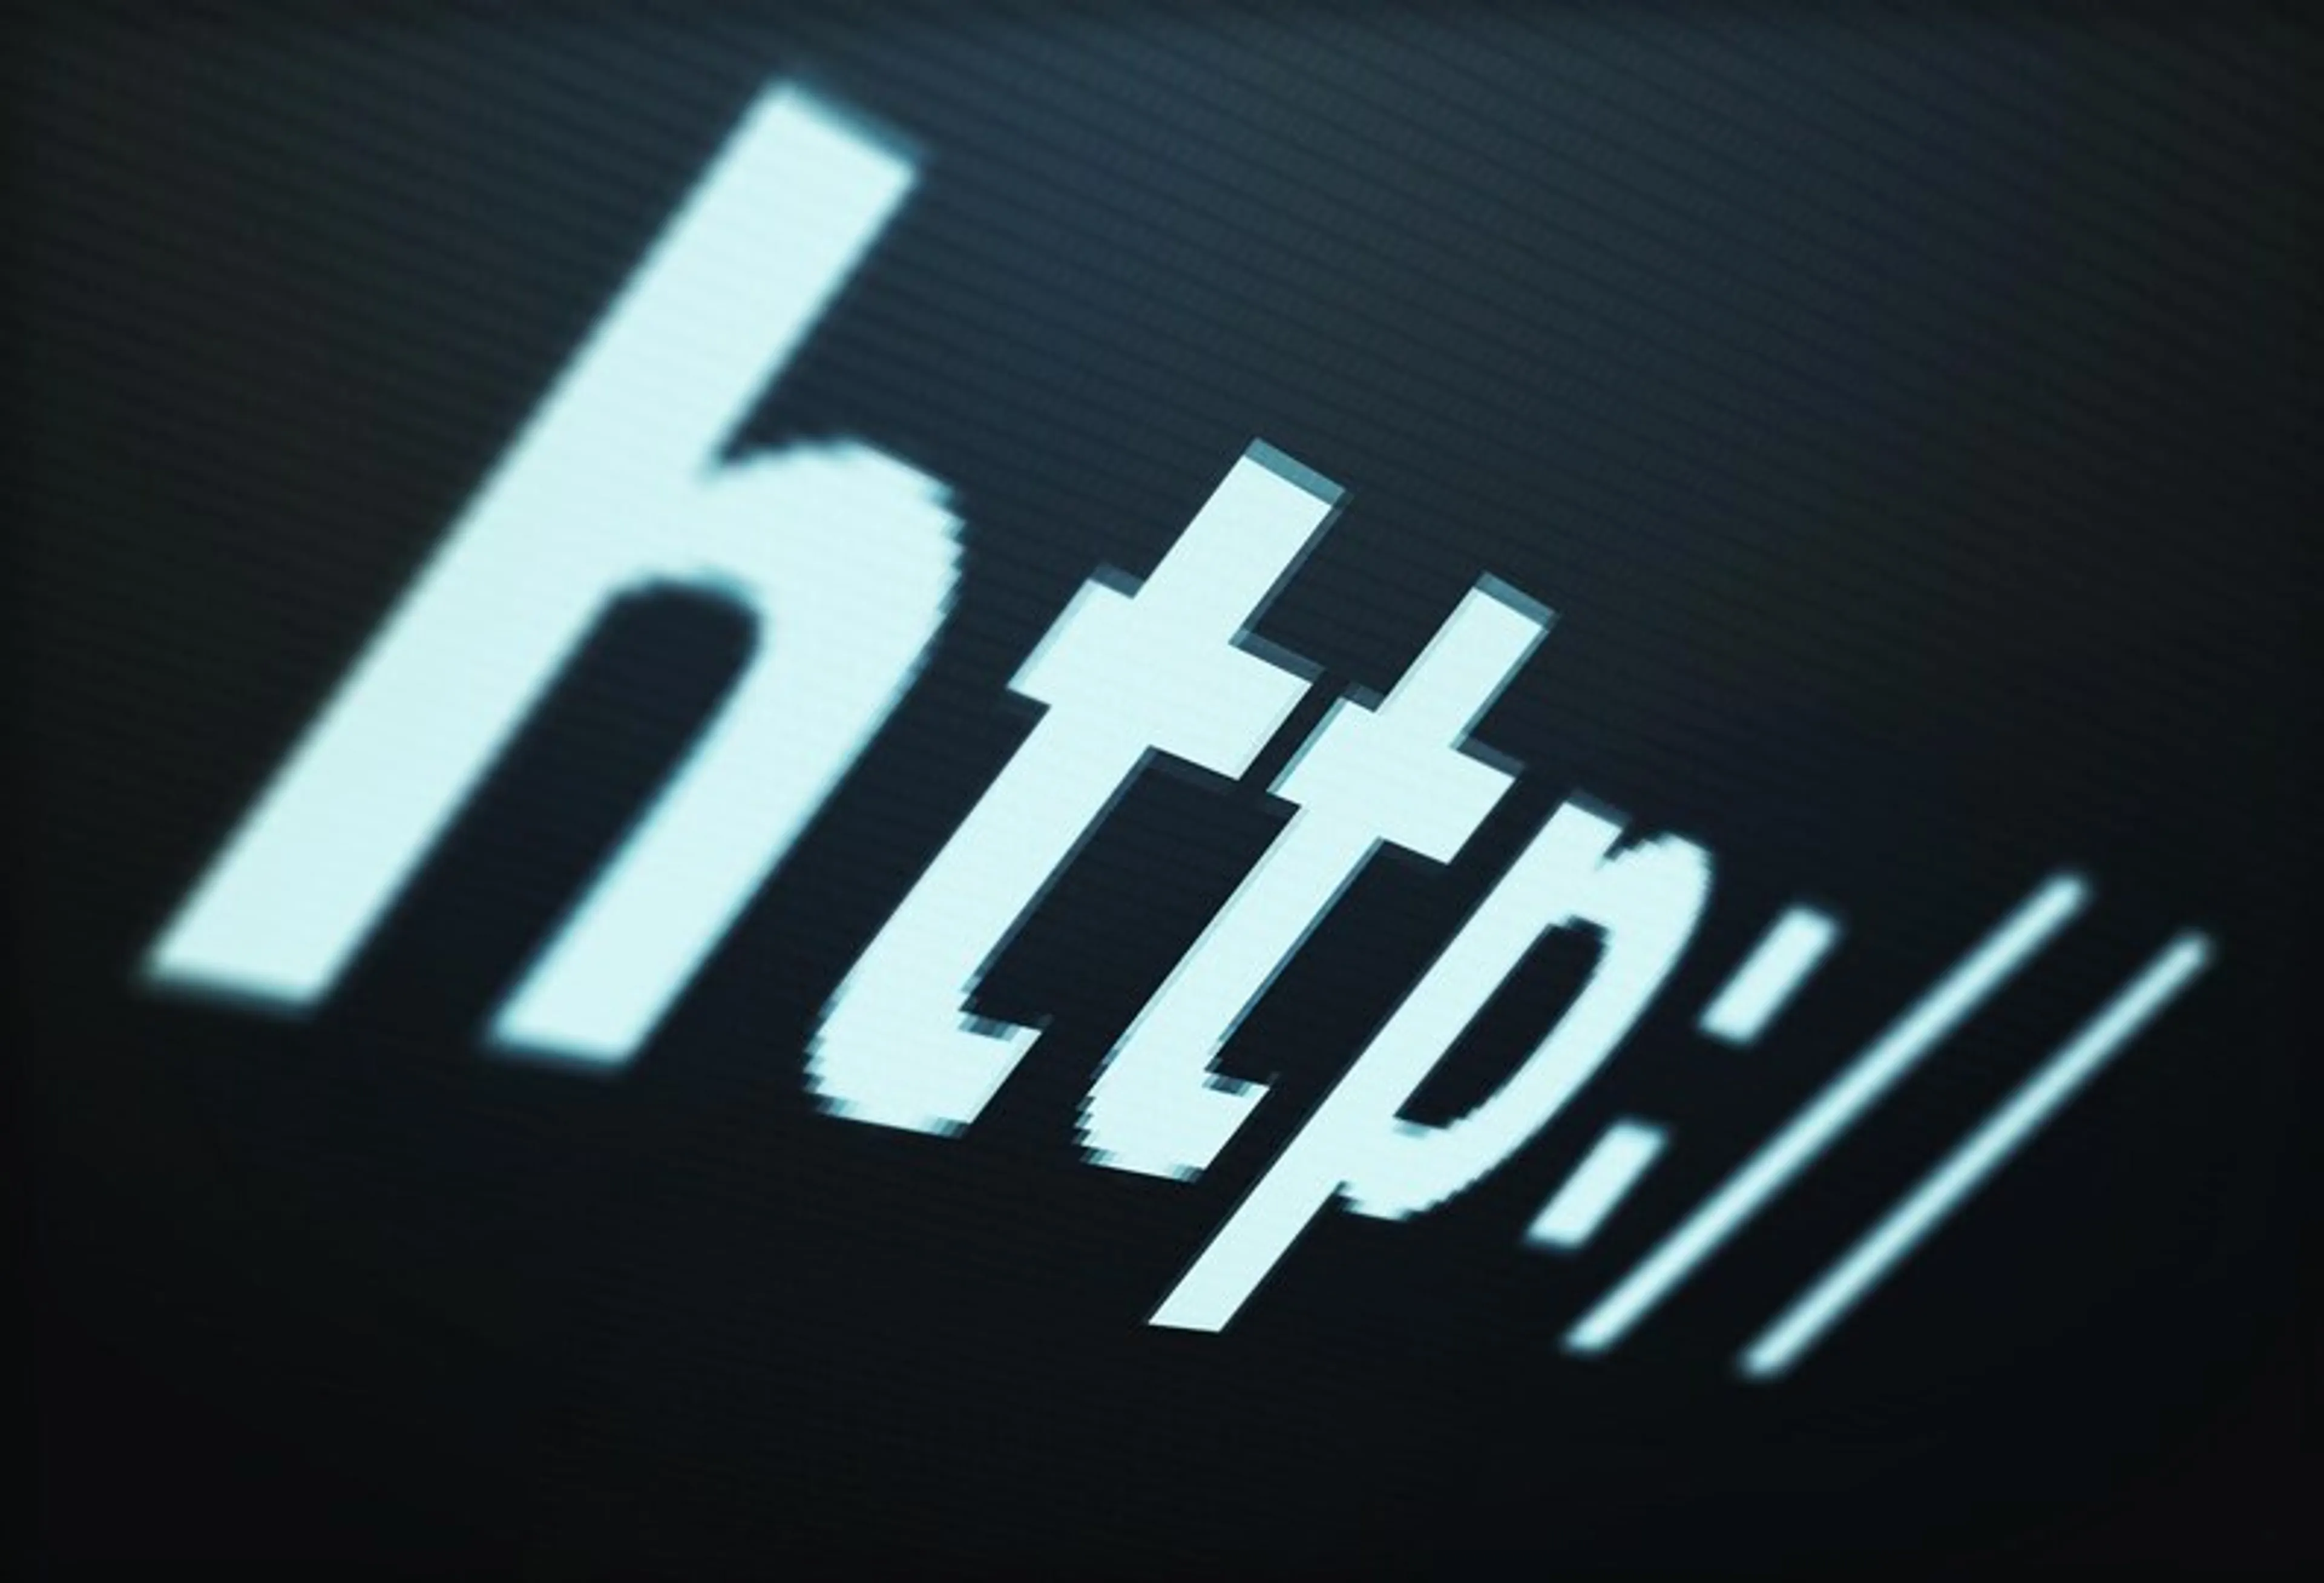 Cấu trúc URL là gì? Tìm hiểu về URL và cách tối ưu hóa cho SEO